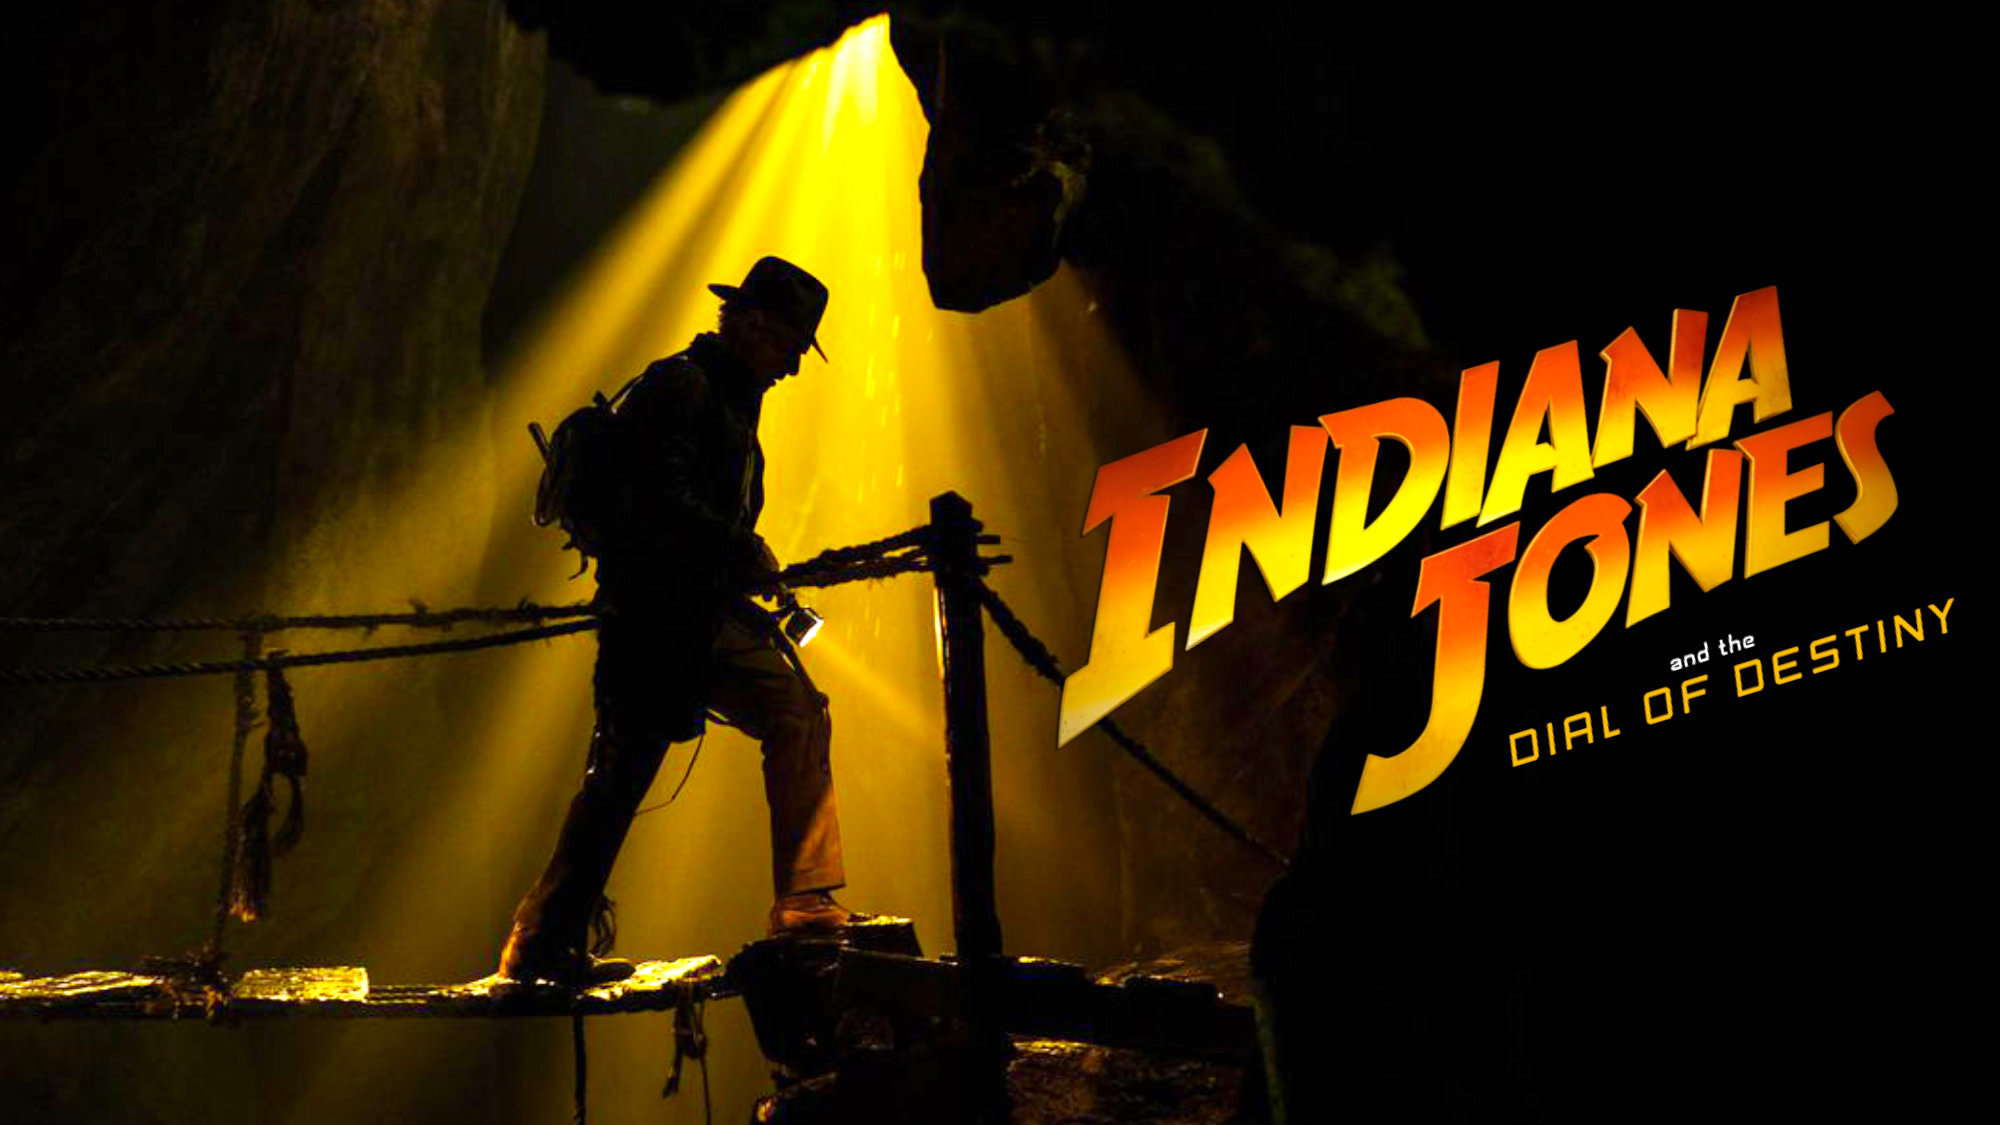 Checa el teaser final de Indiana Jones y el dial del destino